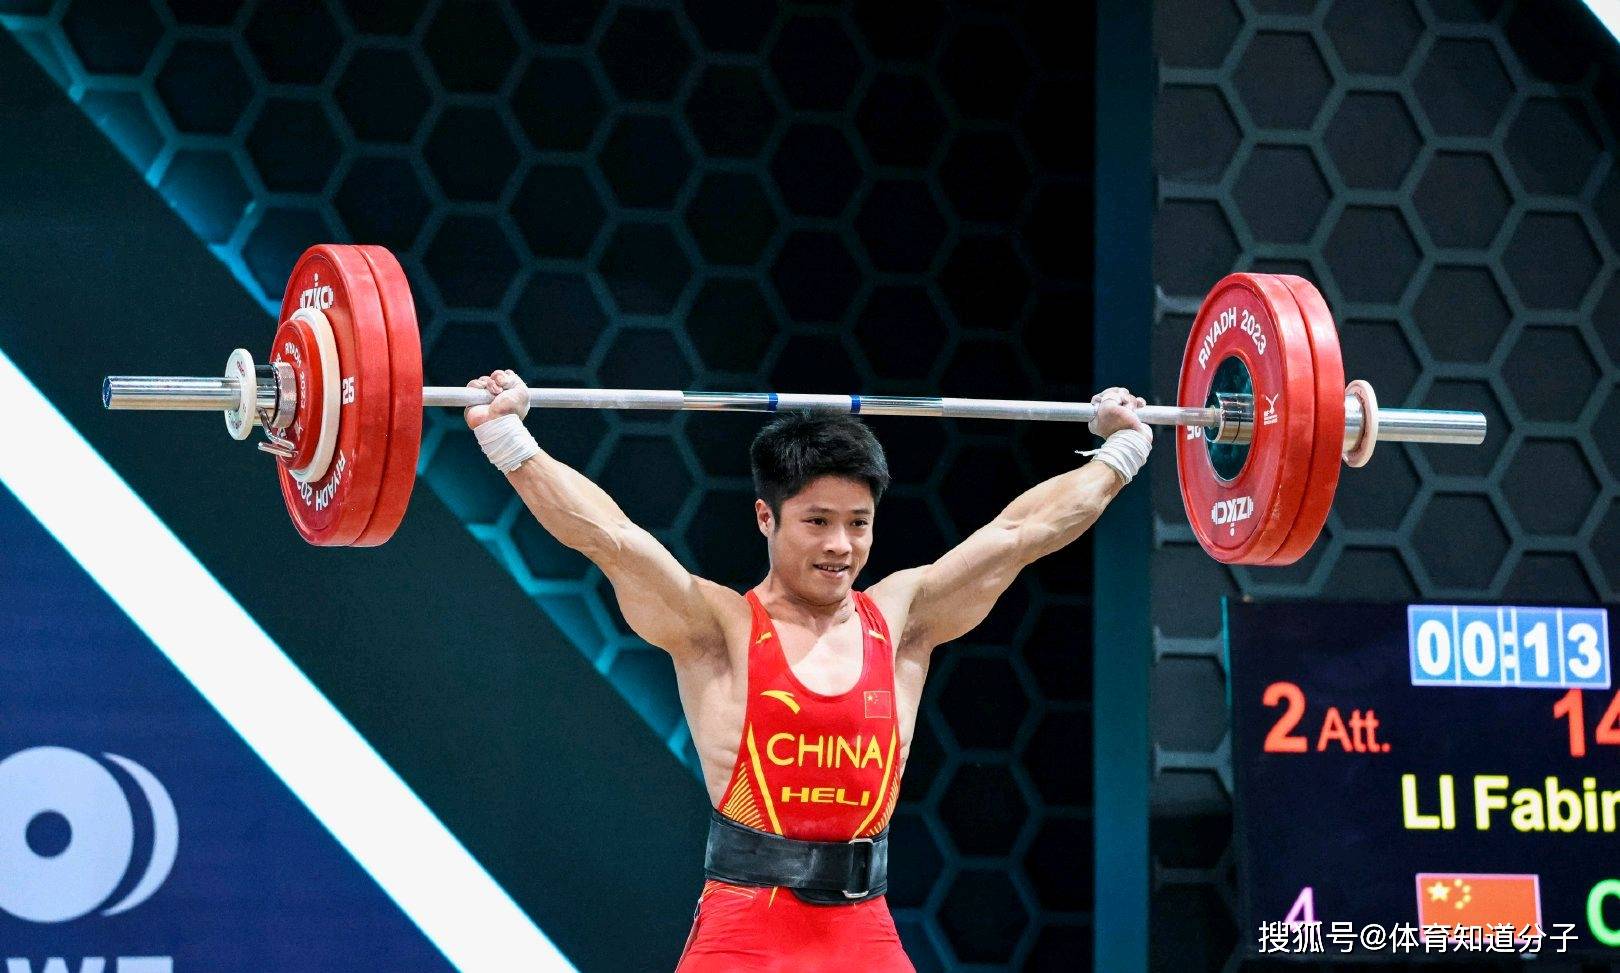 赛场上,中国举重队会面临很多的困难和考验,外国选手会向中国队发起强